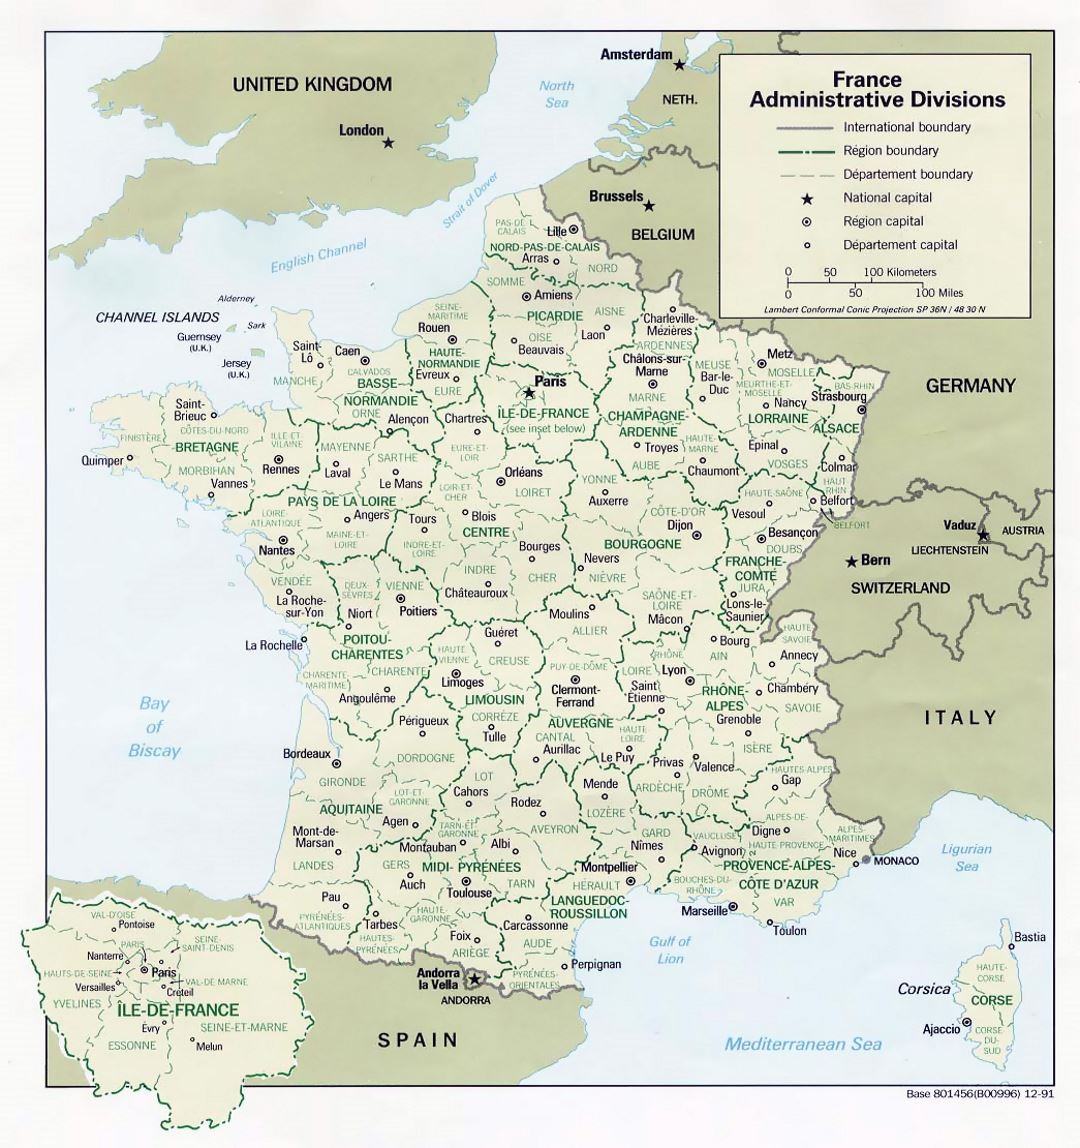 Ampliación de las divisiones administrativas mapa de Francia - 1991